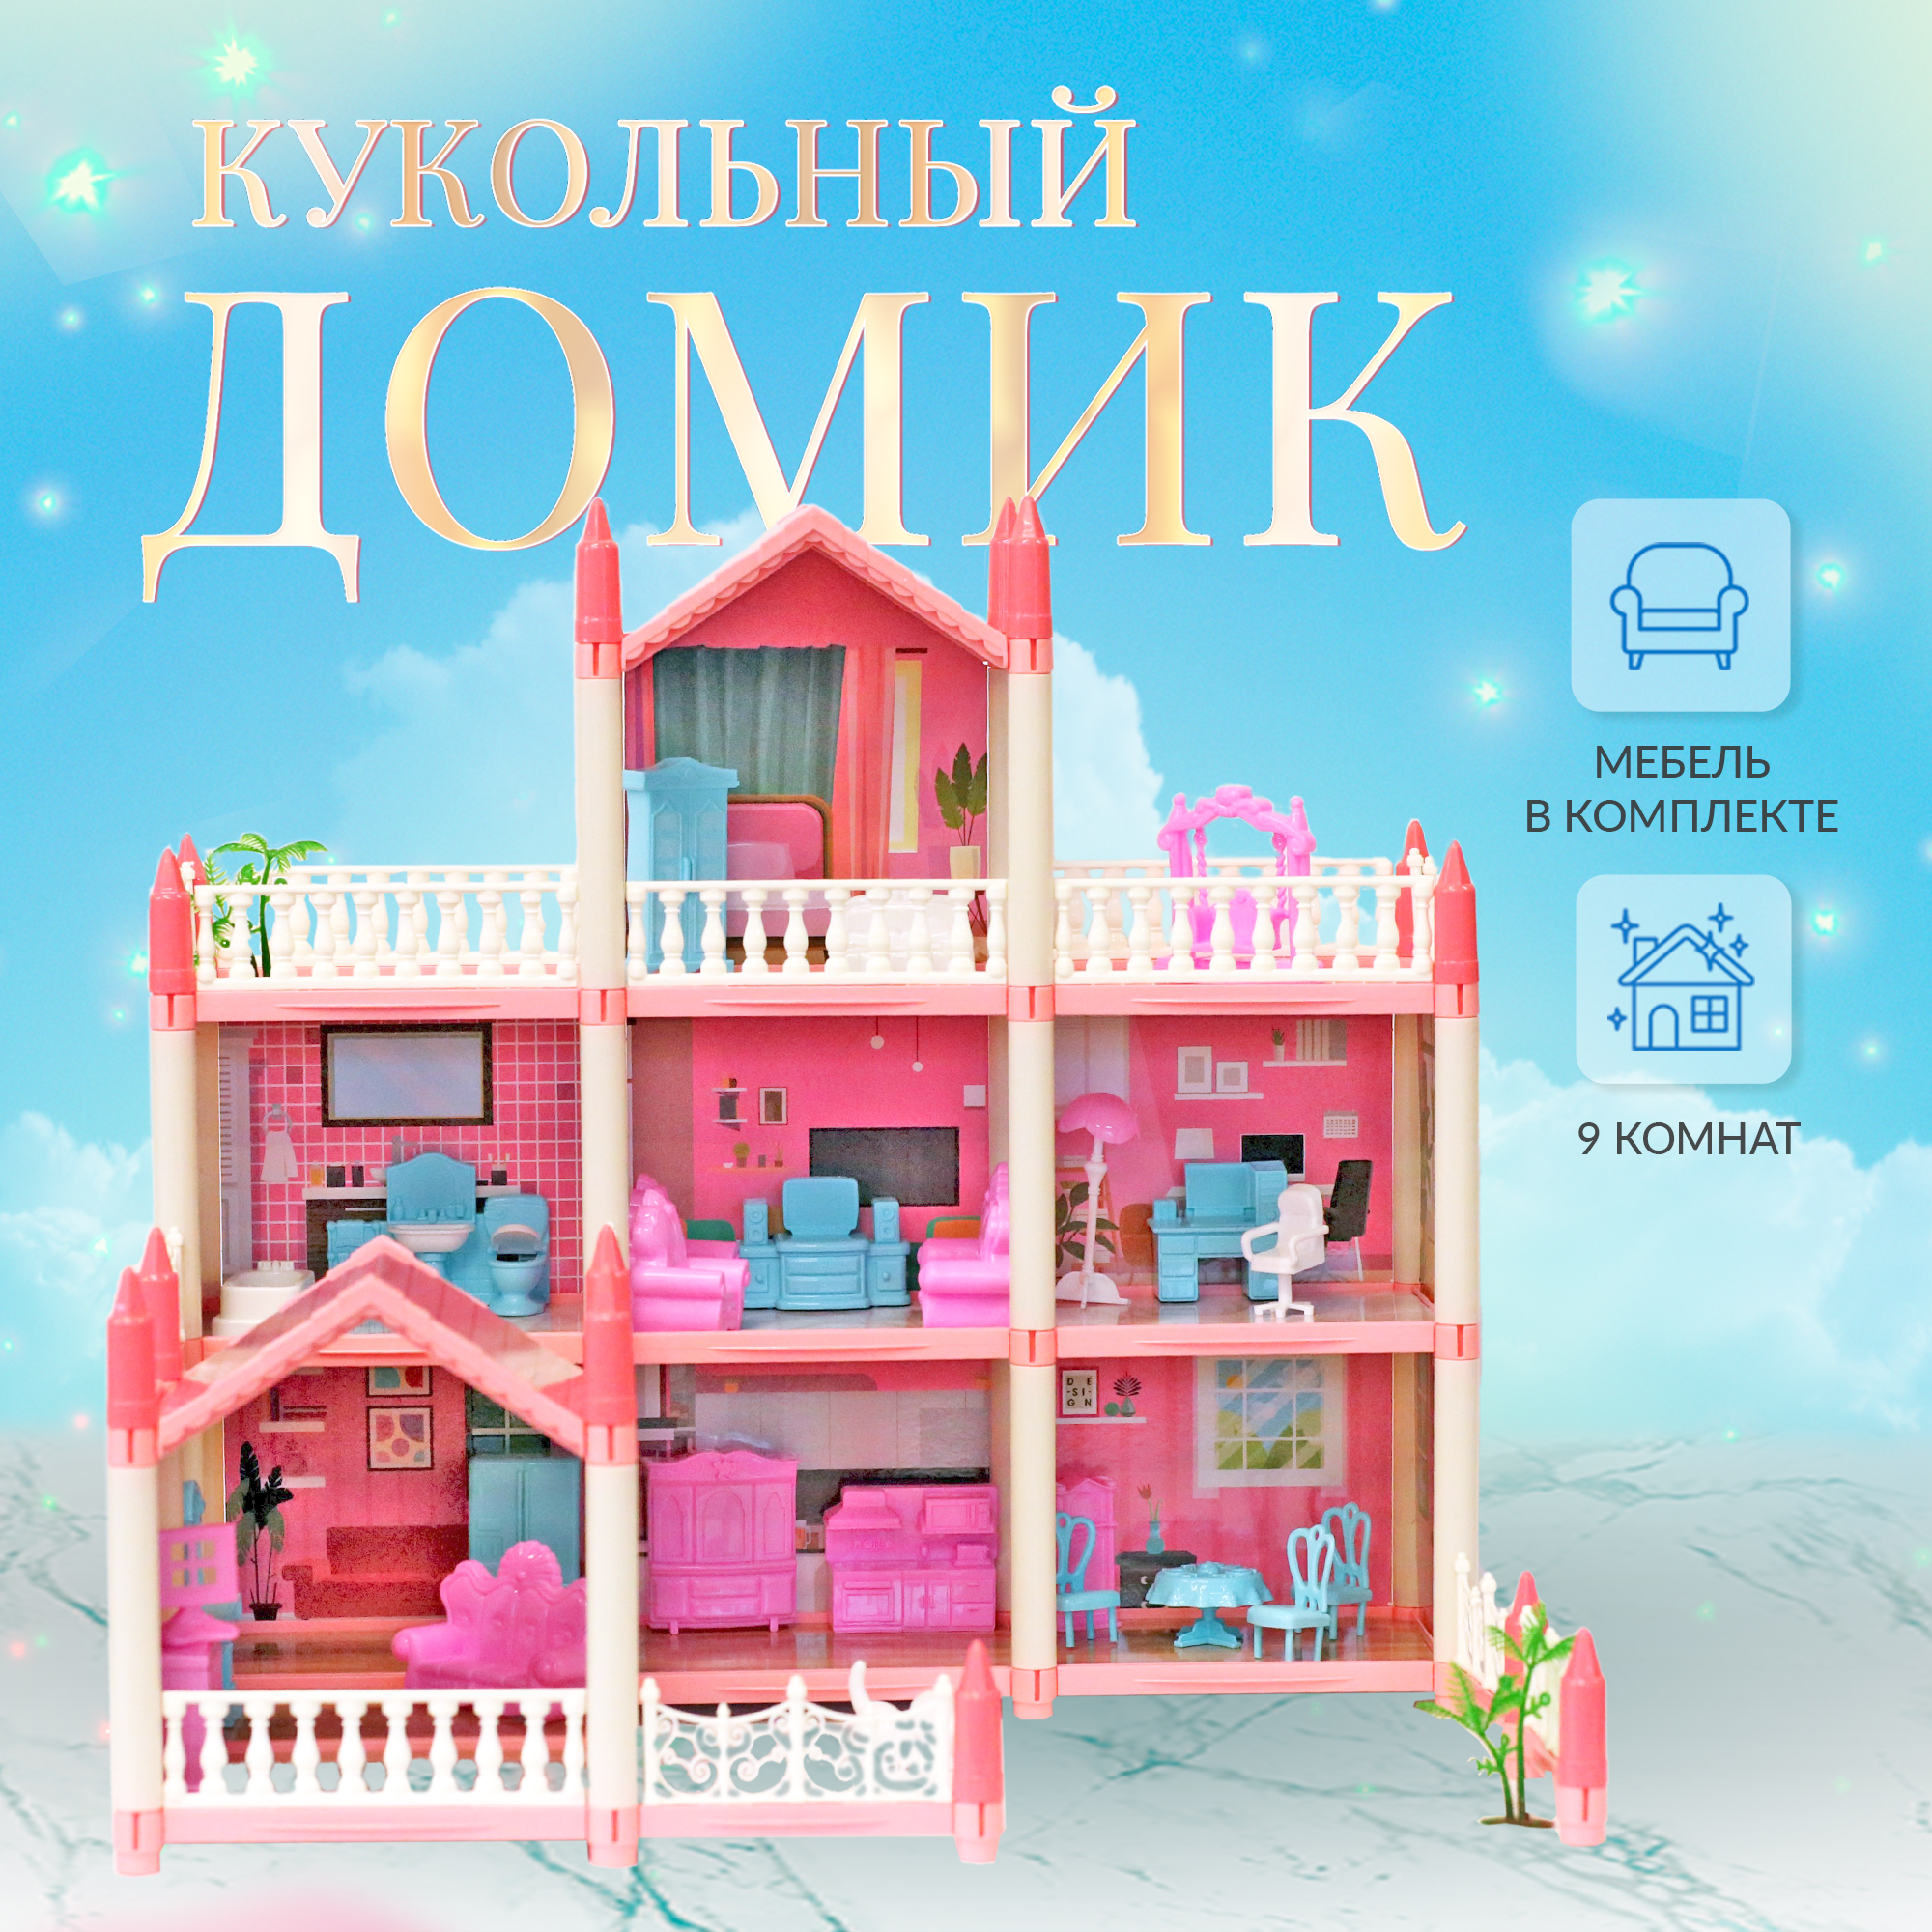 Сборный кукольный домик: 3 этажа, 8 комнат, мебель, аксессуары, кукла, питомец 11500017 sharktoys сборный кукольный домик с аксессуарами и куклой